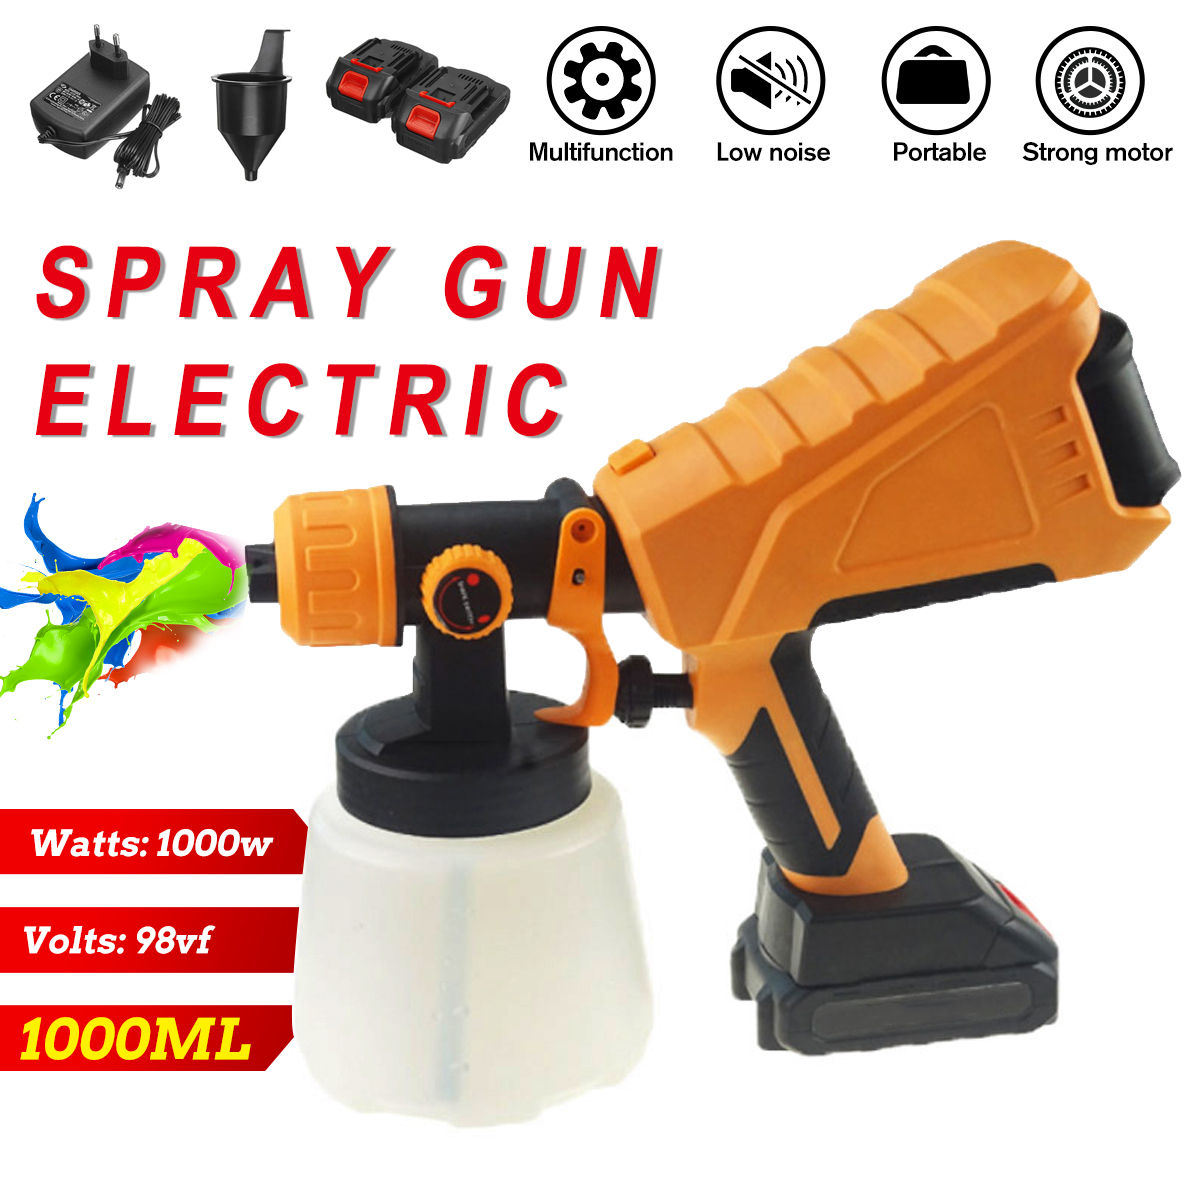 1000ml-Paint-Spray-Guns-Cordless-Electric-Sprayer-Painting-Spraying-Tool-Fit-Makita-EU-Plug-1888003-3